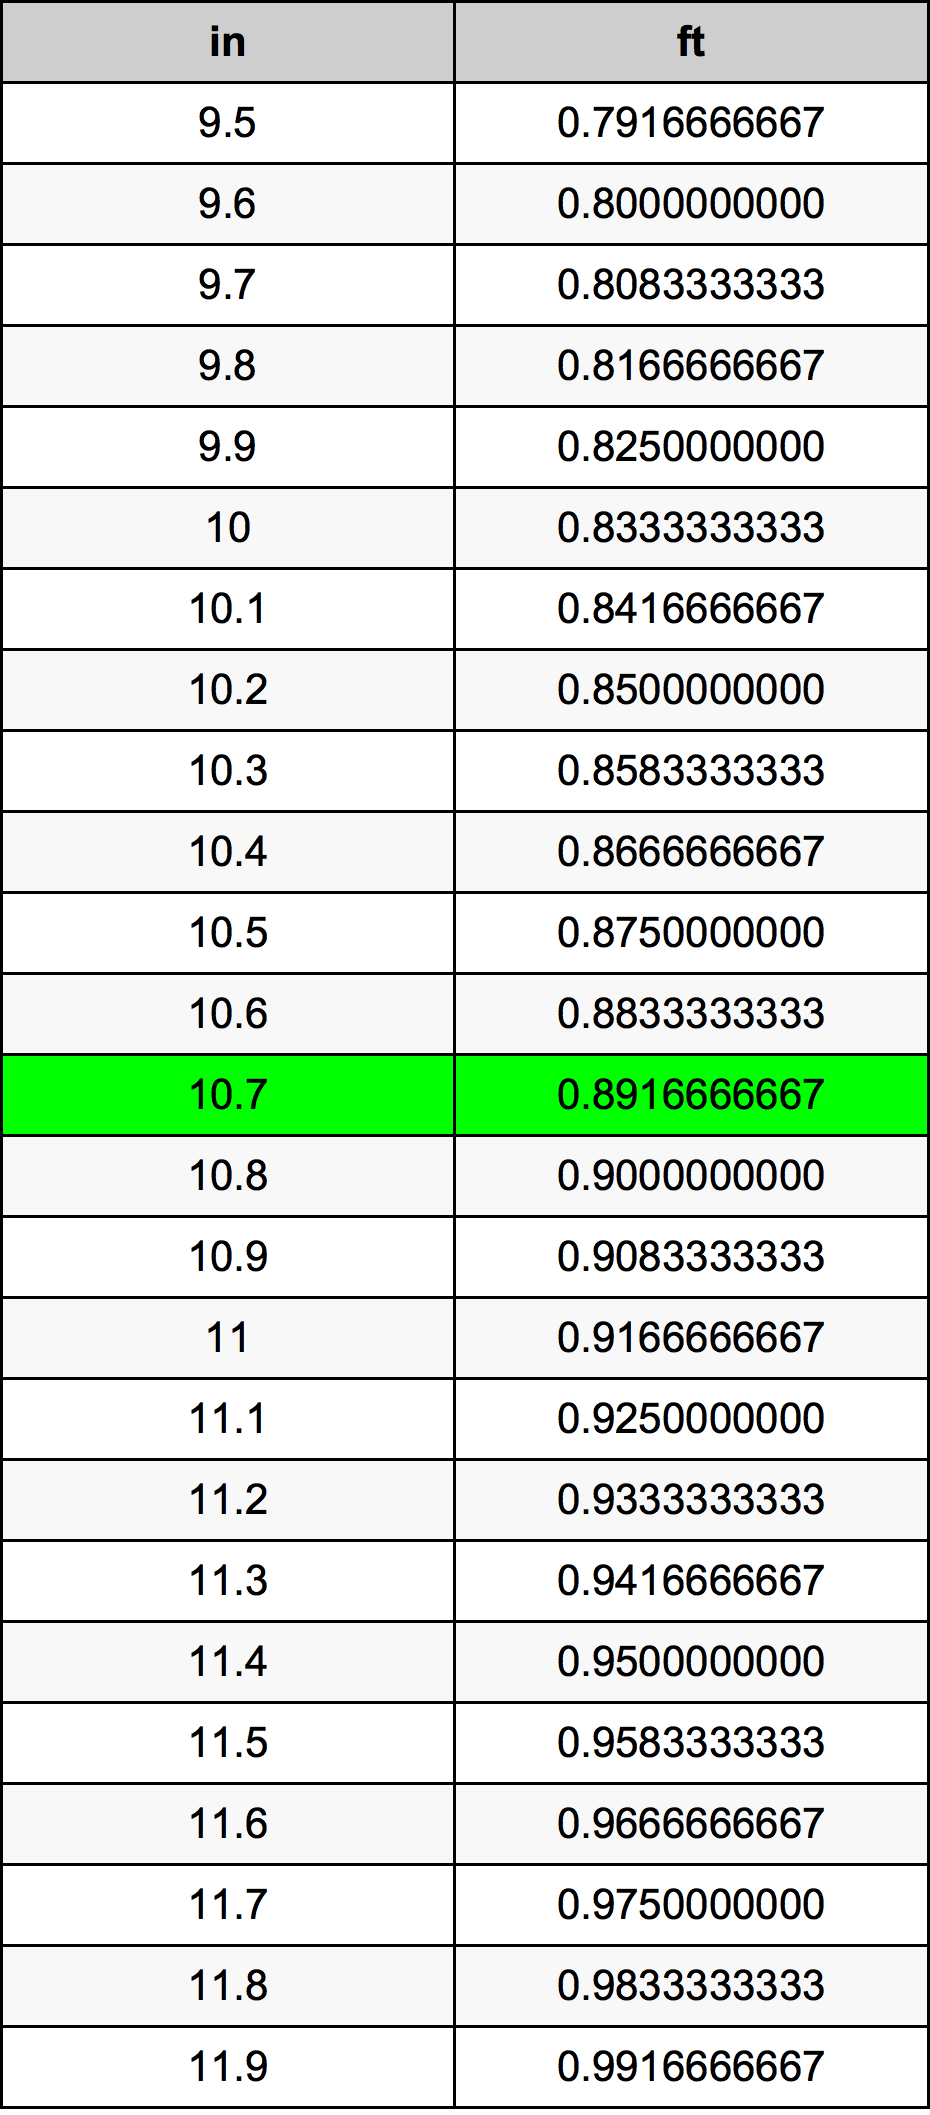 10.7 Pulzier konverżjoni tabella